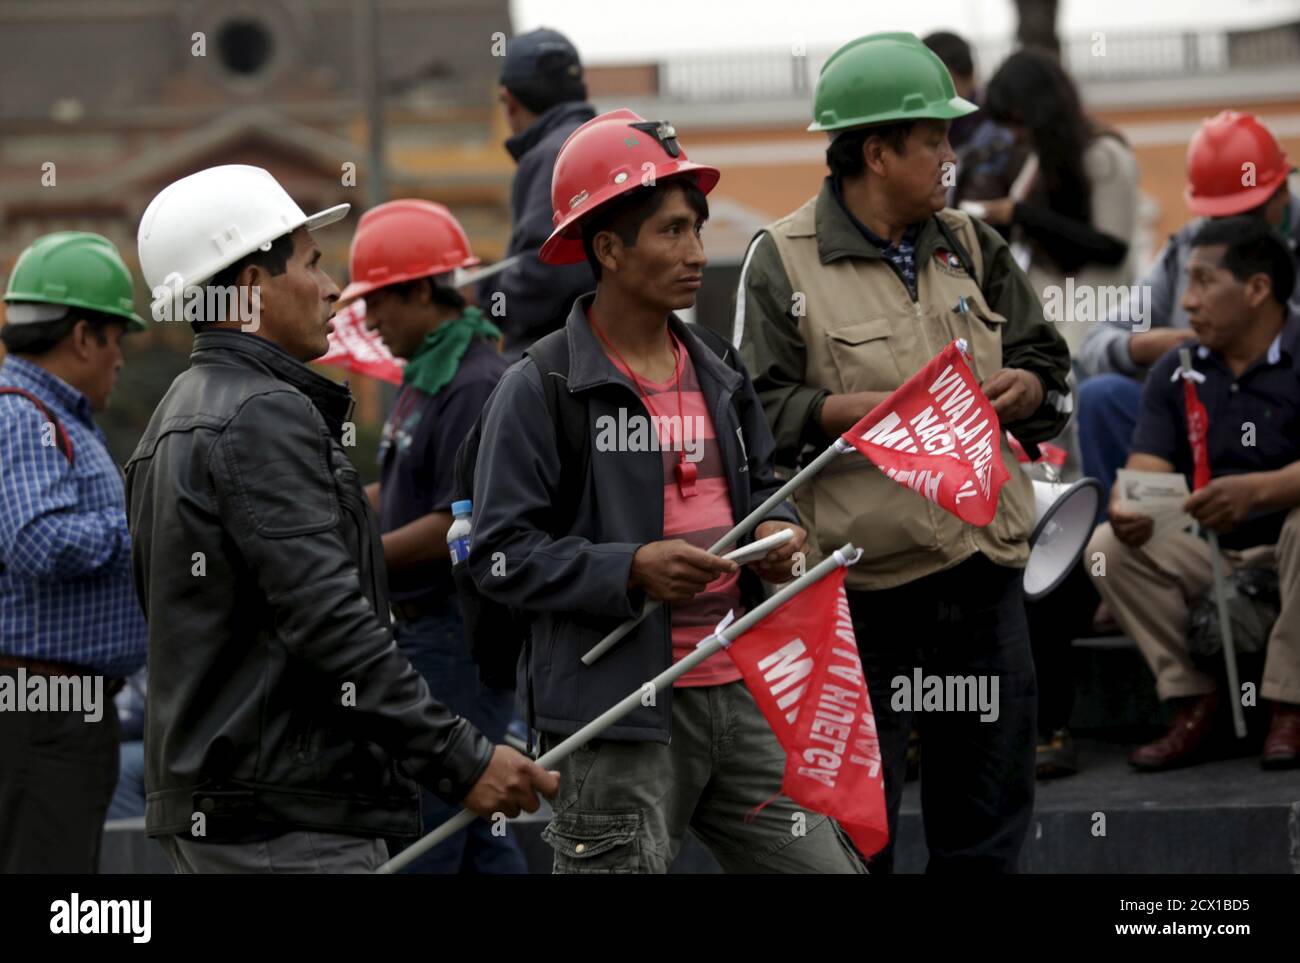 Los mineros tienen señales que indican: 'Larga huelga Nacional Minera' mientras se encuentran en la plaza principal durante una huelga nacional minera en Lima, 21 de mayo de 2015. Trabajadores sindicalizados en minas en Perú iniciaron una huelga indefinida el lunes en un intento de presionar al gobierno para que fortalezca las leyes laborales, dijo el jefe del sindicato nacional de trabajadores de minas. Las paradas de trabajo programadas en varias minas amenazan con frenar la producción mineral en Perú, el tercer productor mundial de cobre, plata y estaño y el séptimo mayor productor de oro. REUTERS/Mariana Bazo Foto de stock